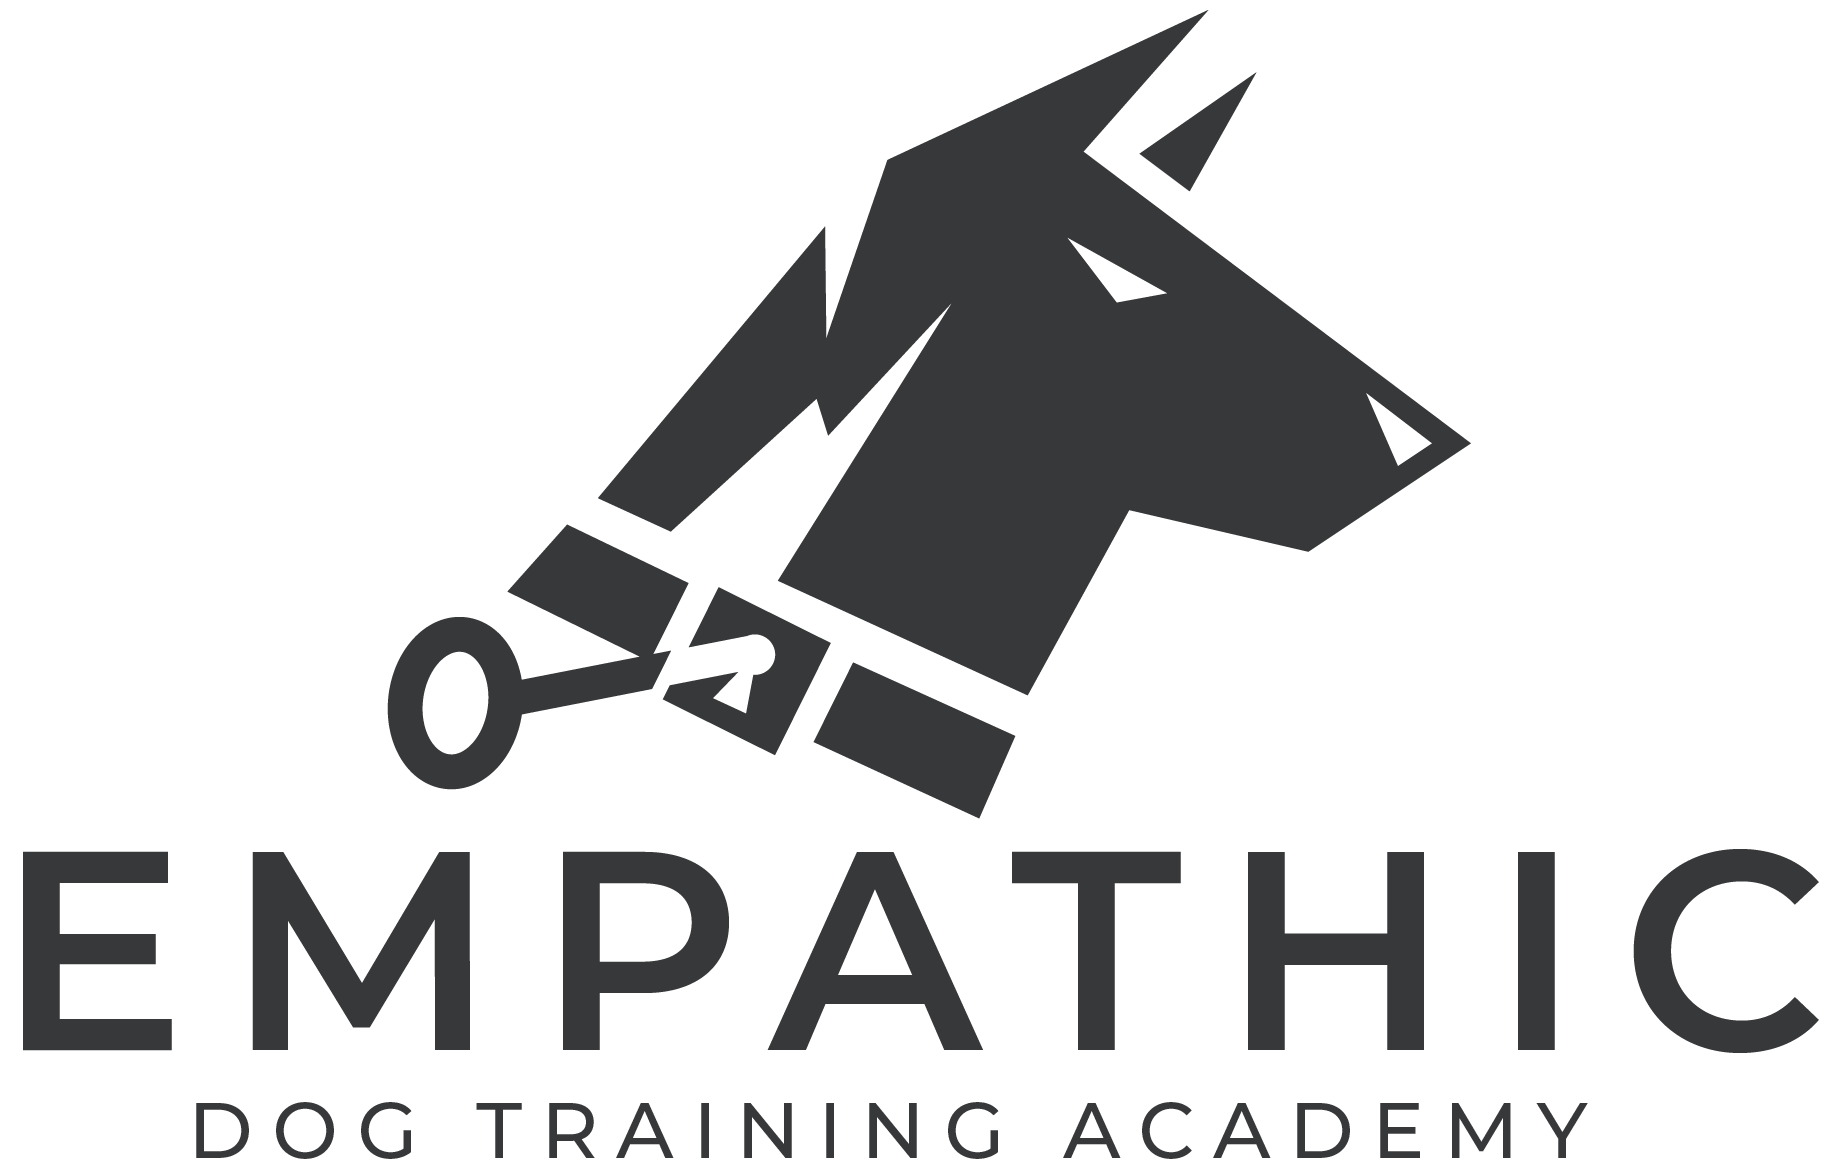 Empathic Dog Training Academy logo